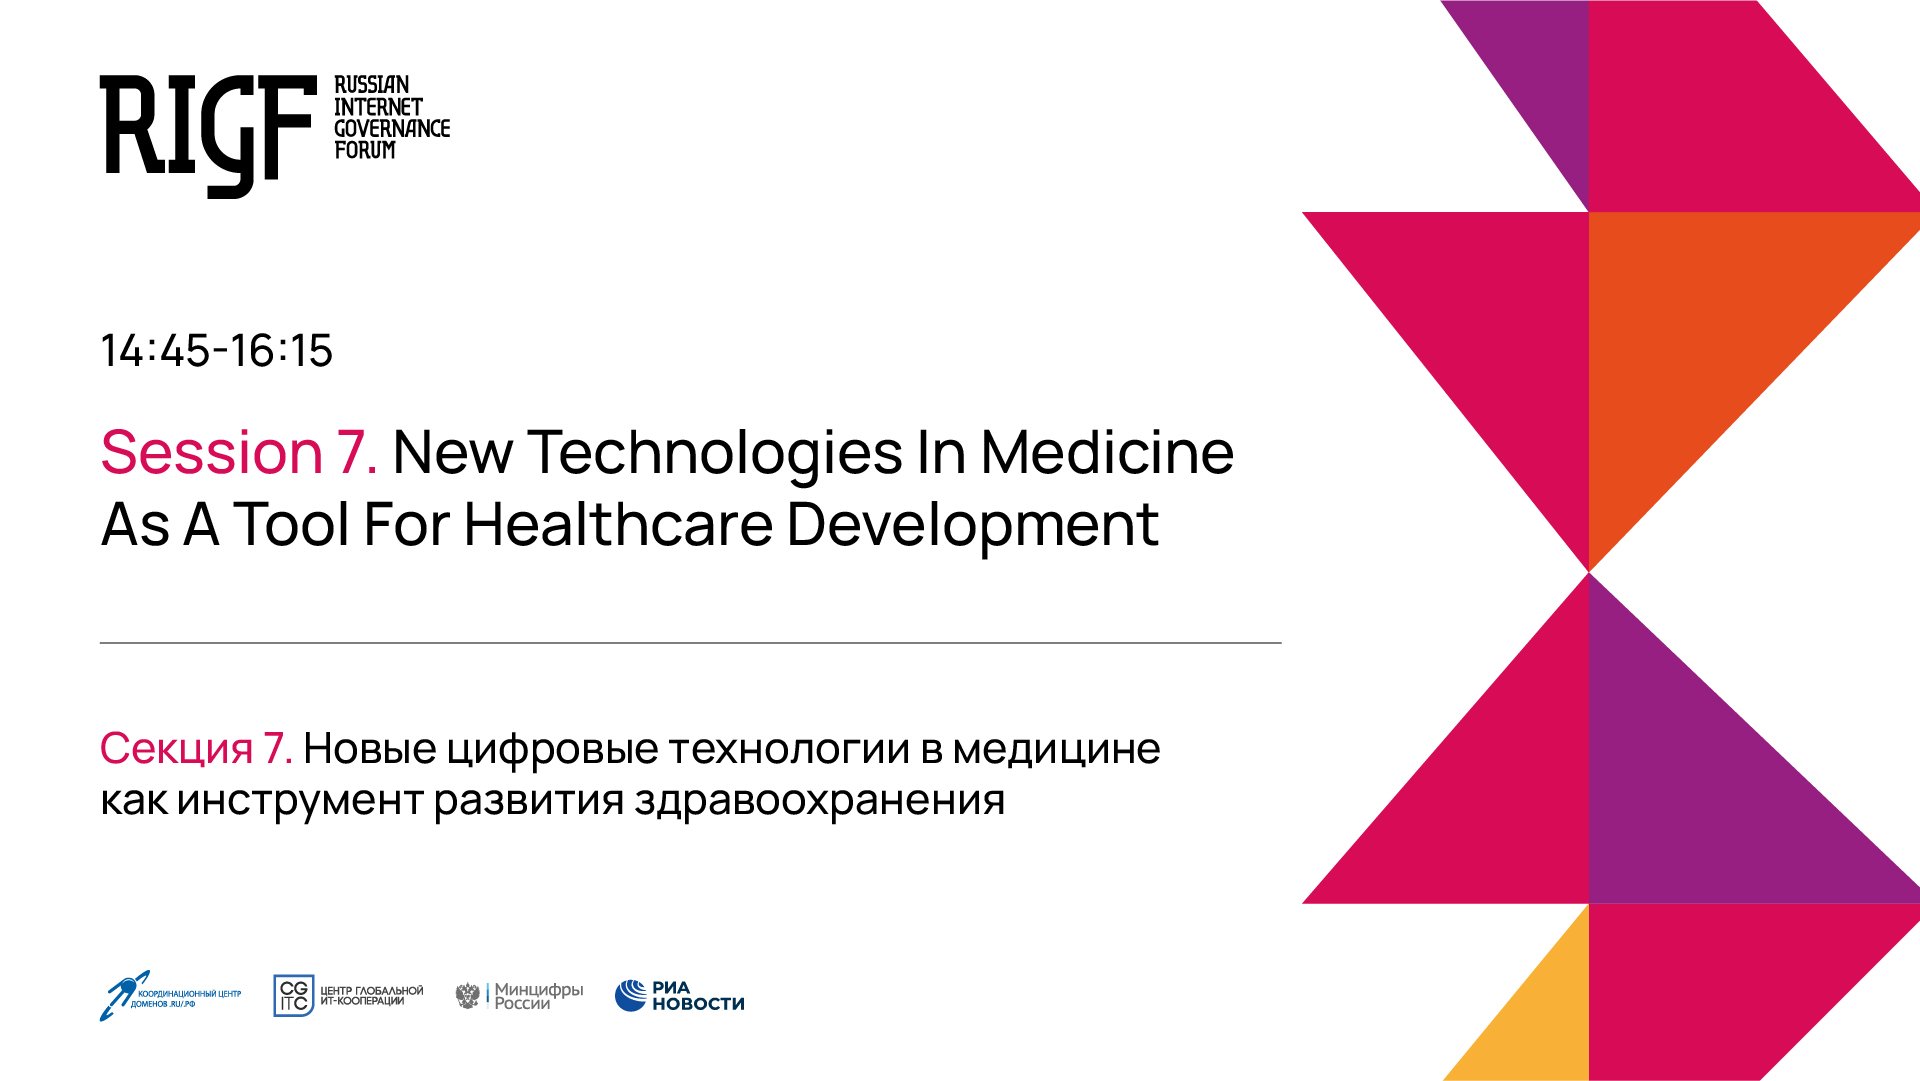 Новые цифровые технологии в медицине как инструмент развития здравоохранения. Секция 7 || RIGF 2023